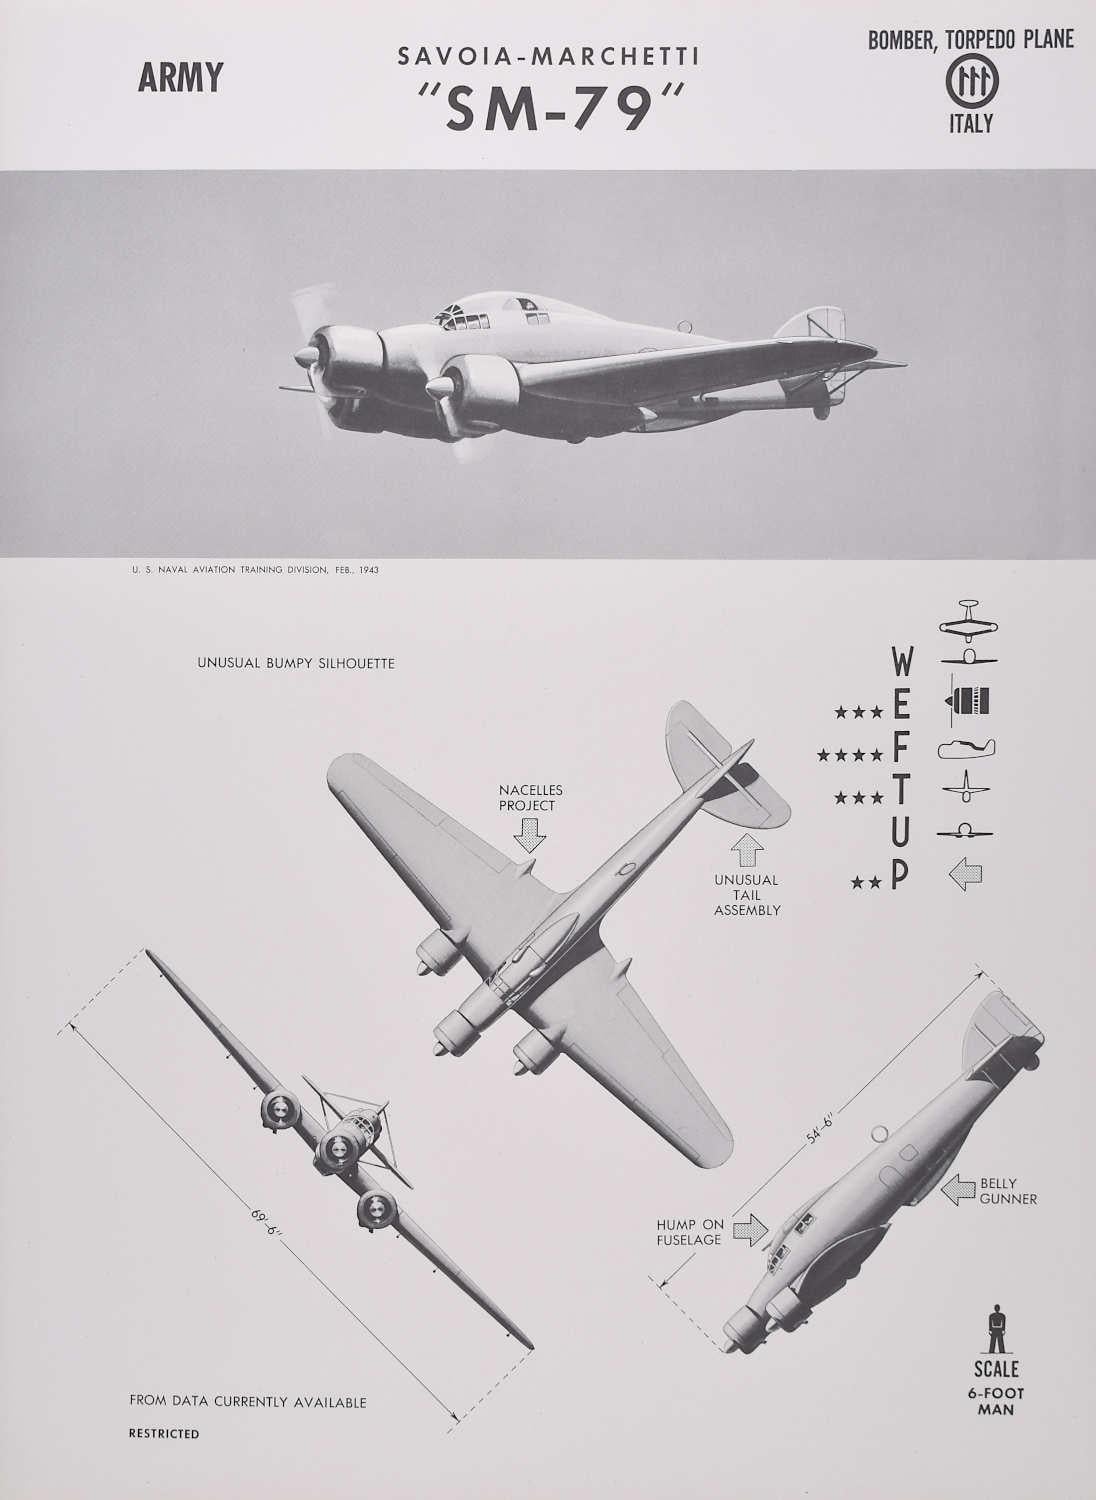 1943 Cartel de identificación del avión bombardero italiano Savoia-Marchetti "SM-79" de la 2ª Guerra Mundial - Print de Unknown